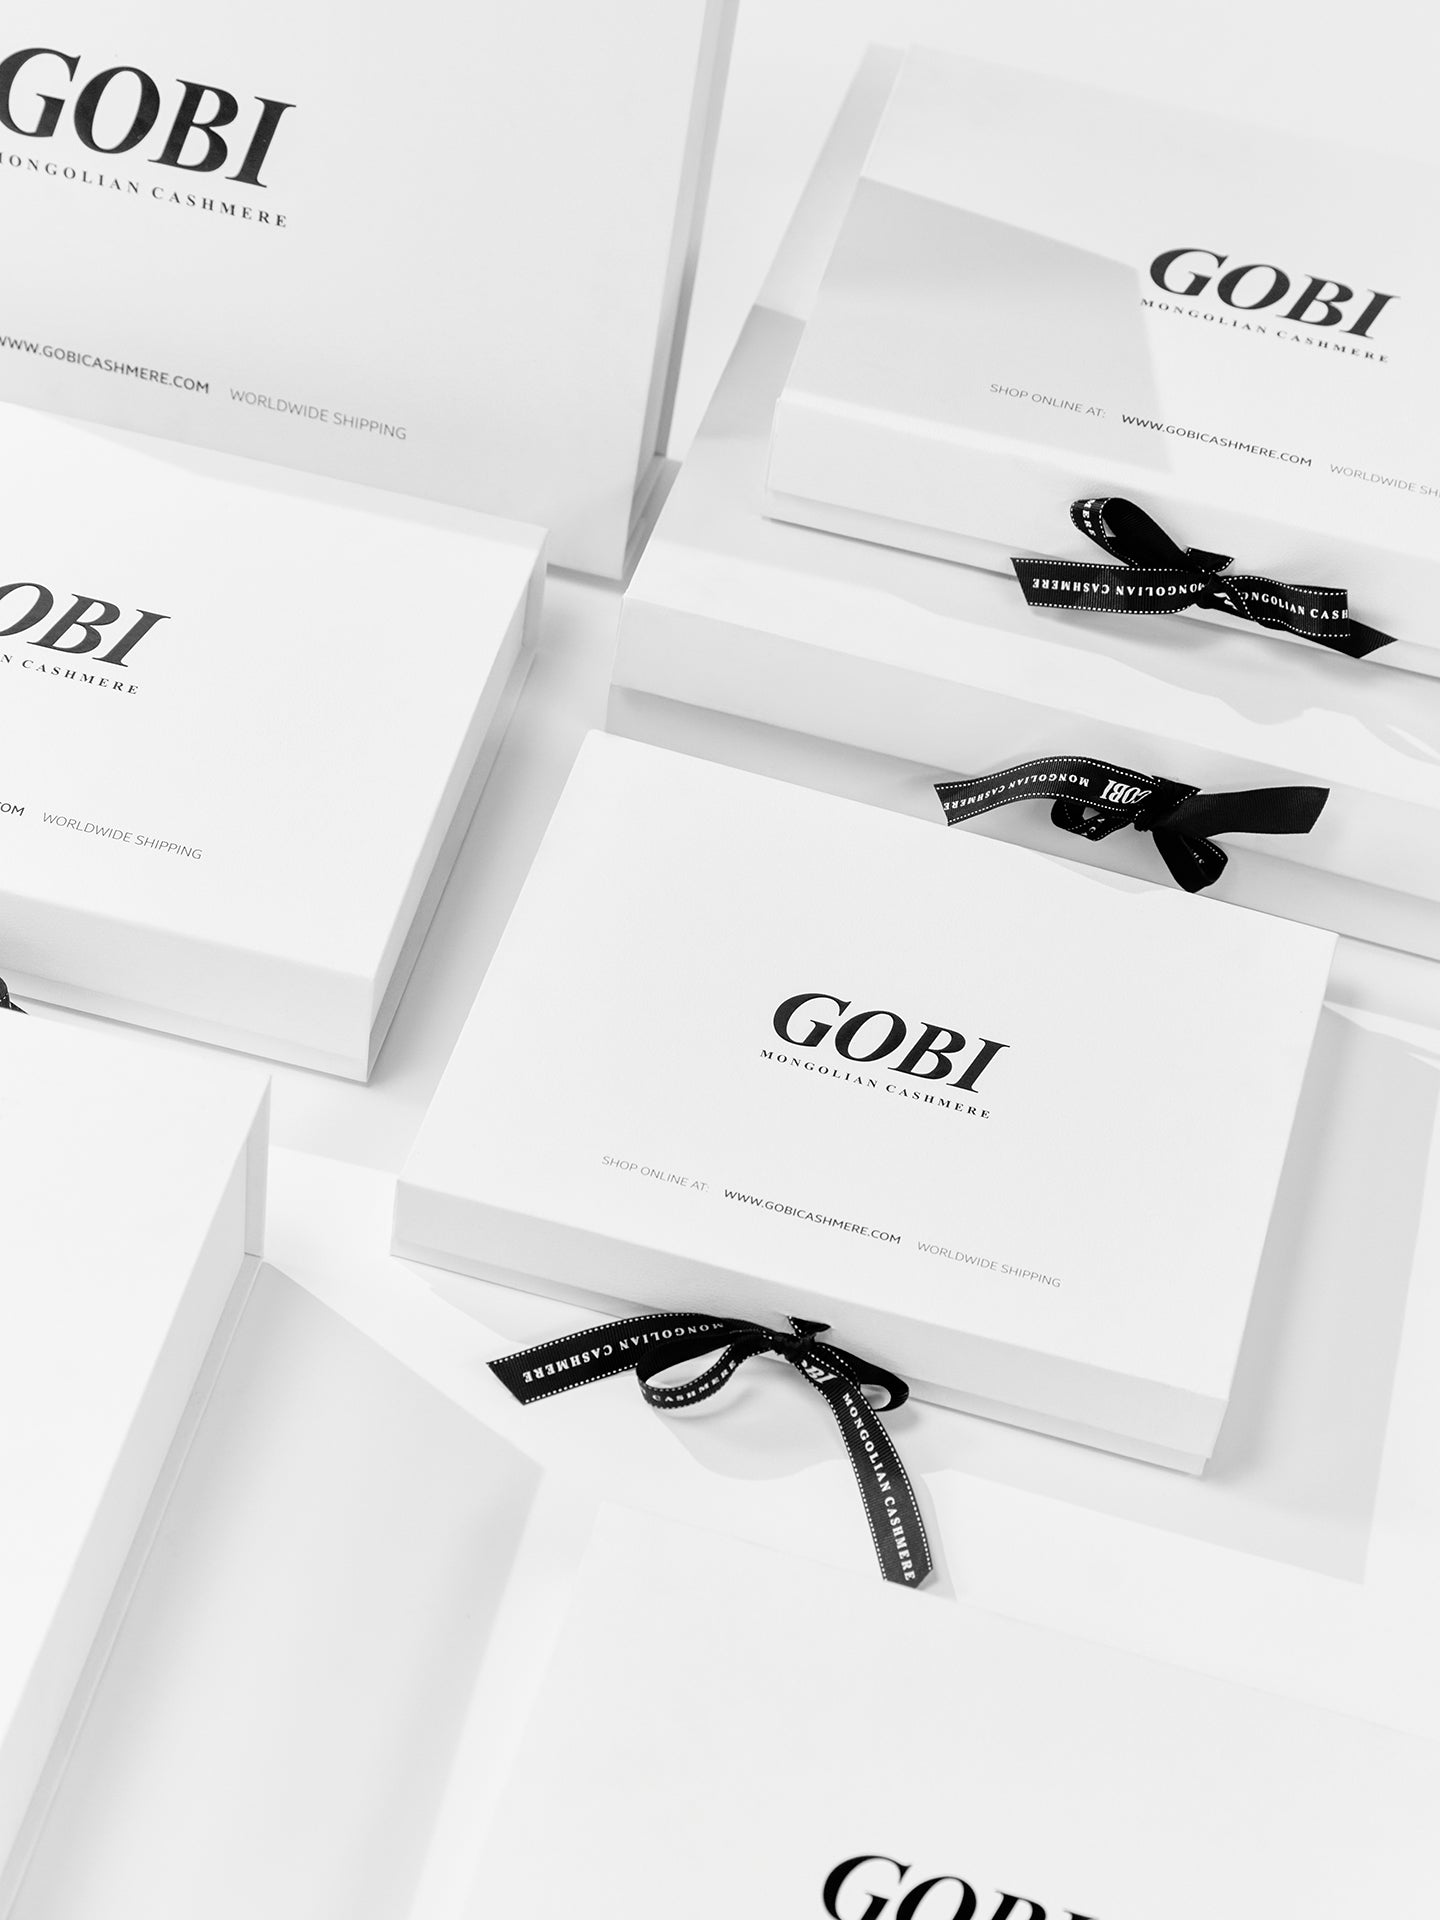 Boîte cadeau de luxe - Gobi Cashmere